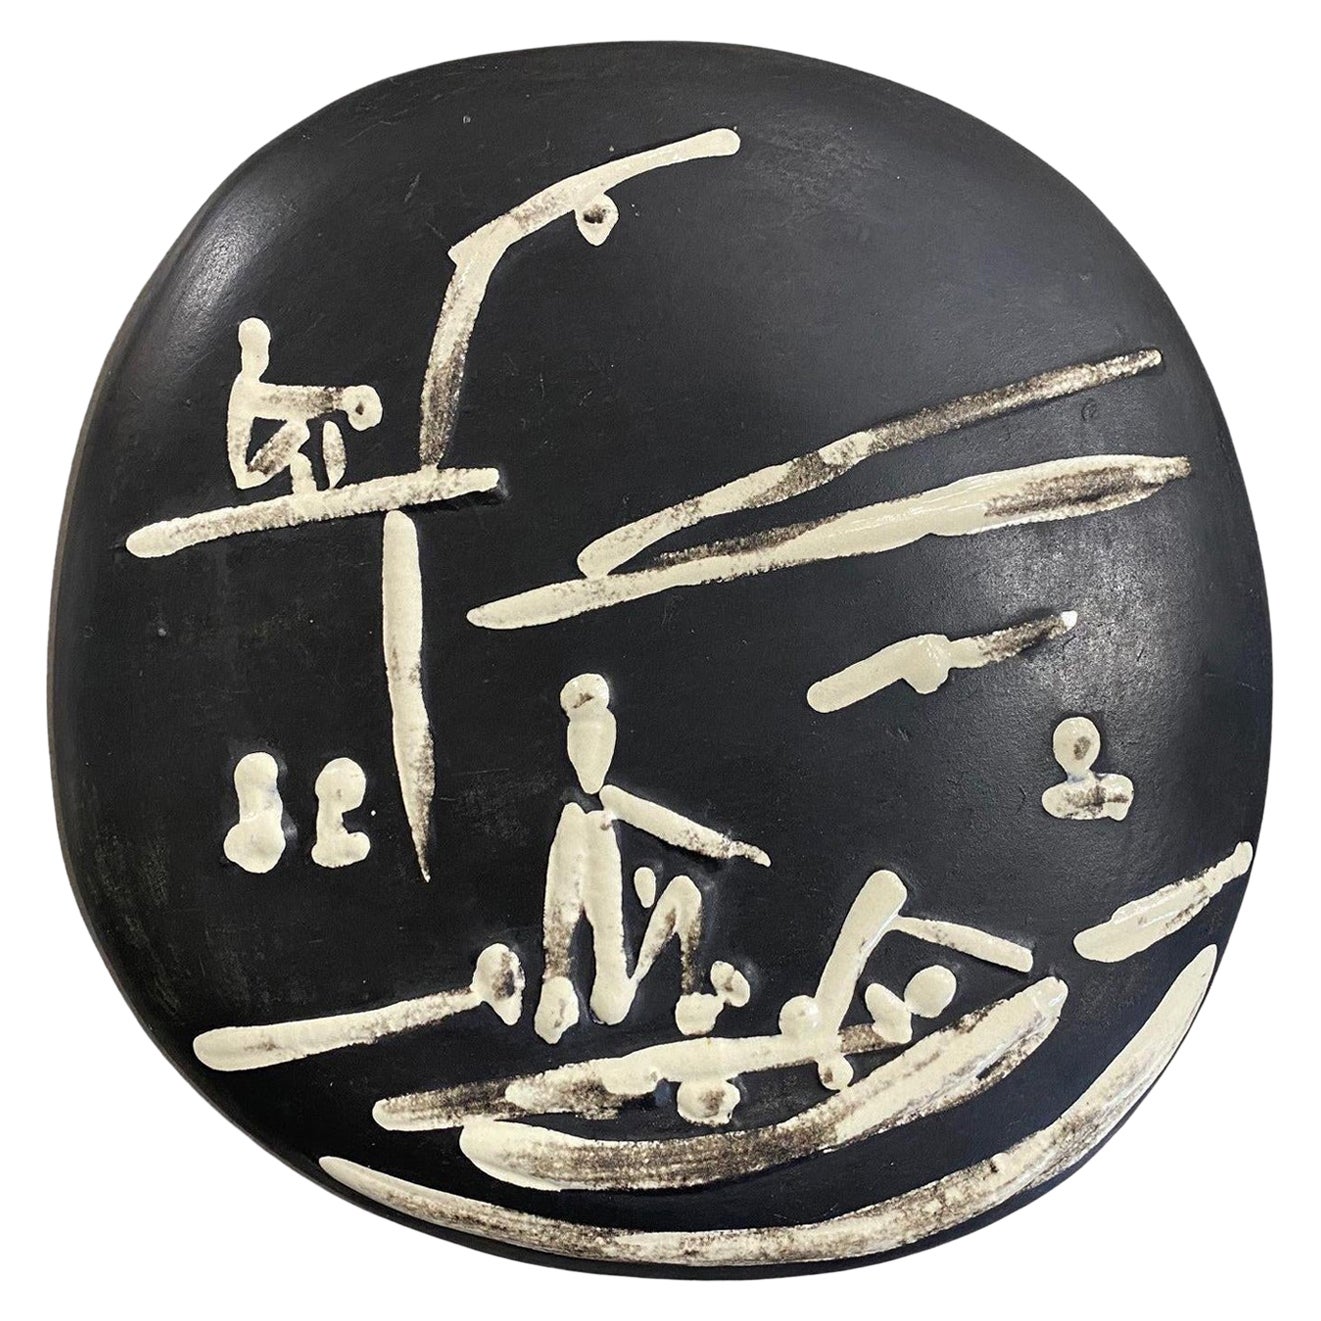 Pablo Picasso Signed Ceramic Plate, Scène De Plage Edition Picasso Madoura, 1956